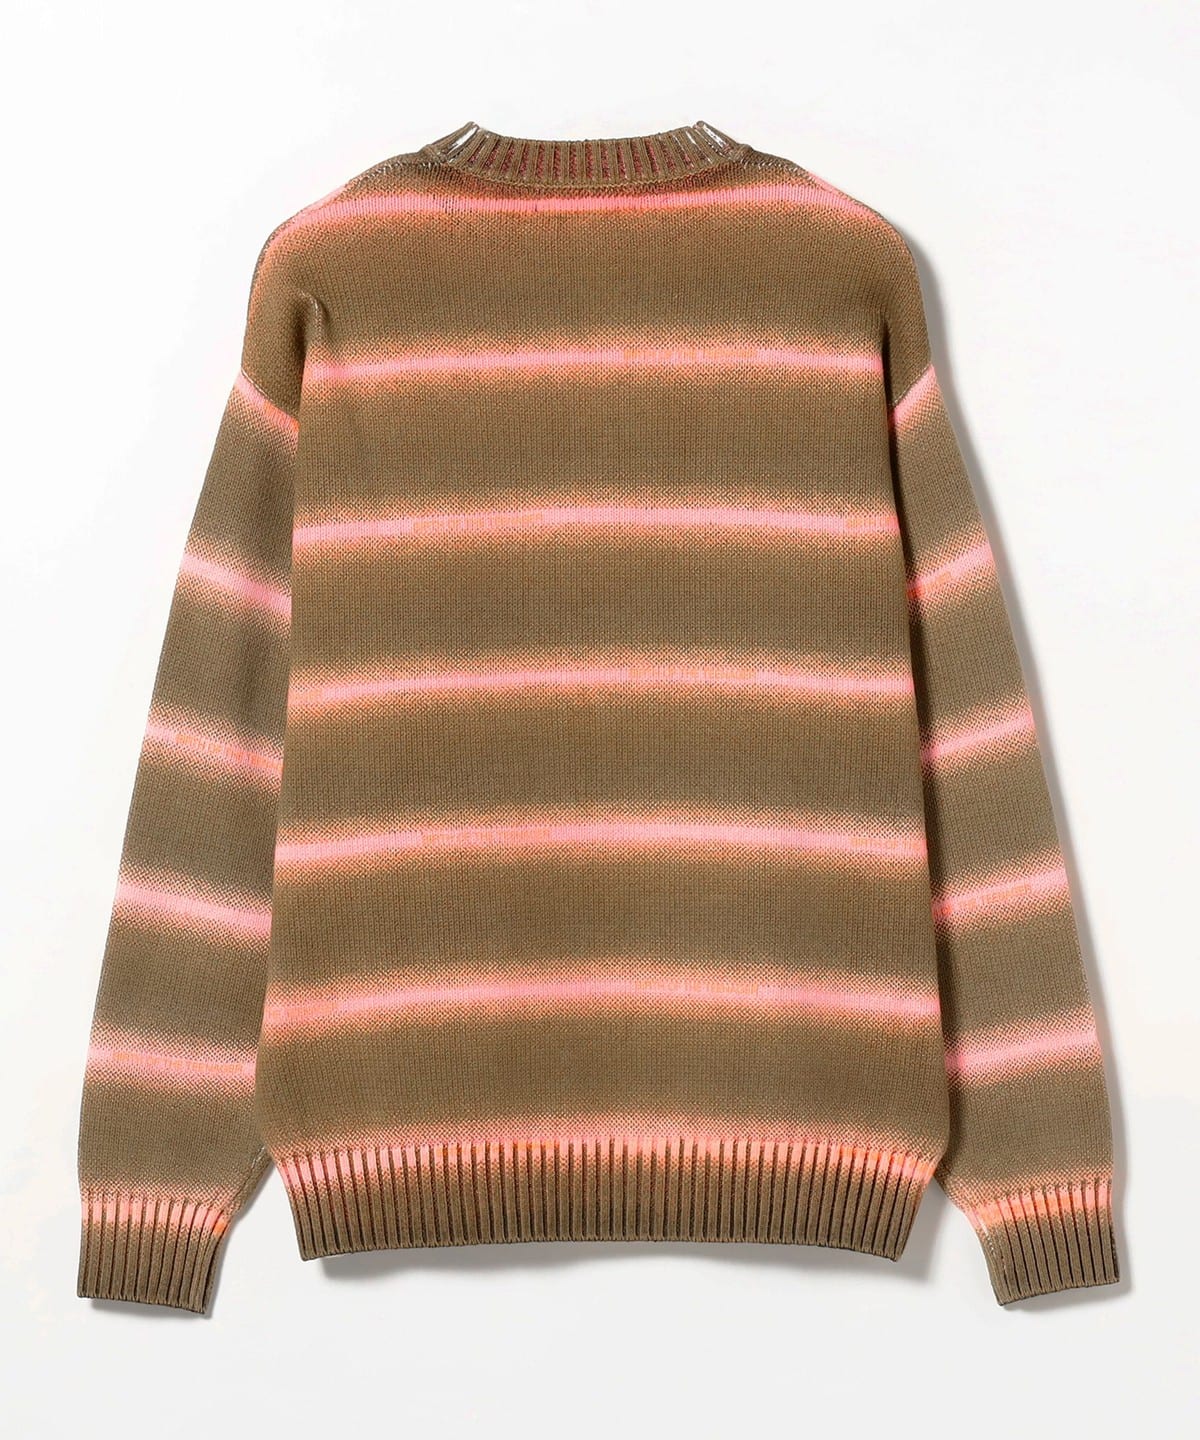 ベージュベースの総柄デザインが【試着のみ】美品 即完売 BOTT 22AW Paint Sweater ニット